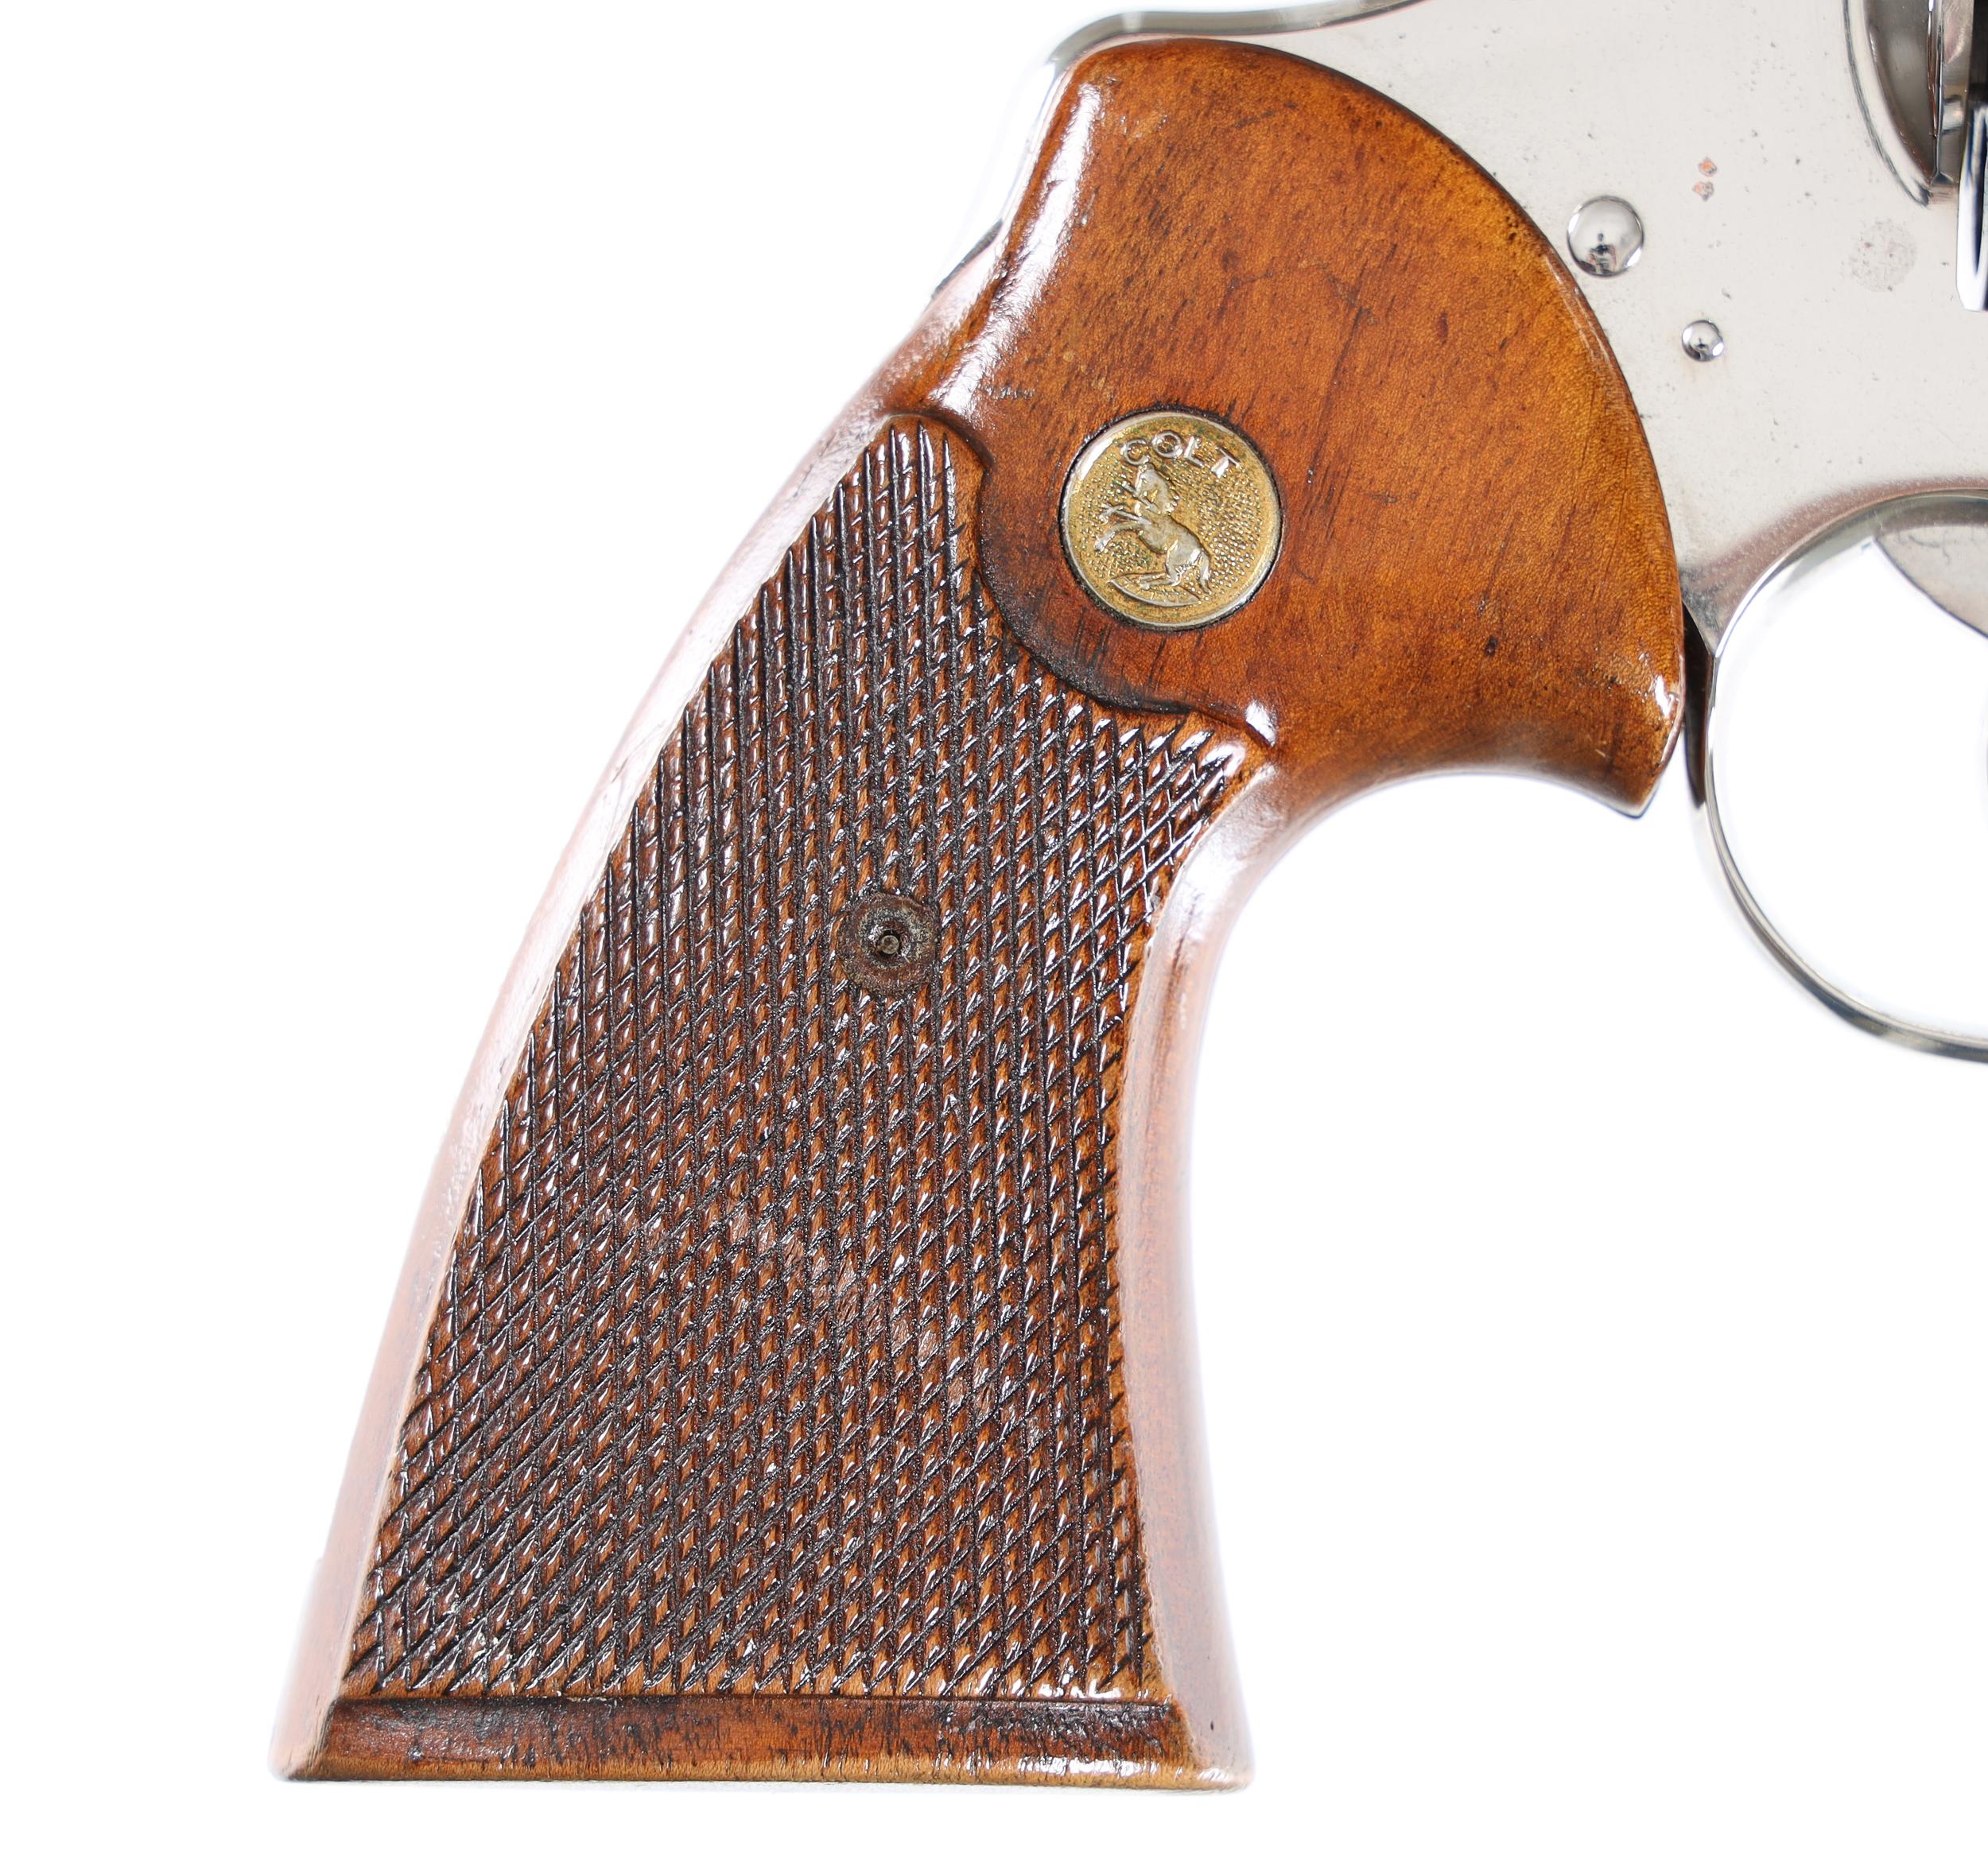 Colt Nickel Python Revolver .357 mag